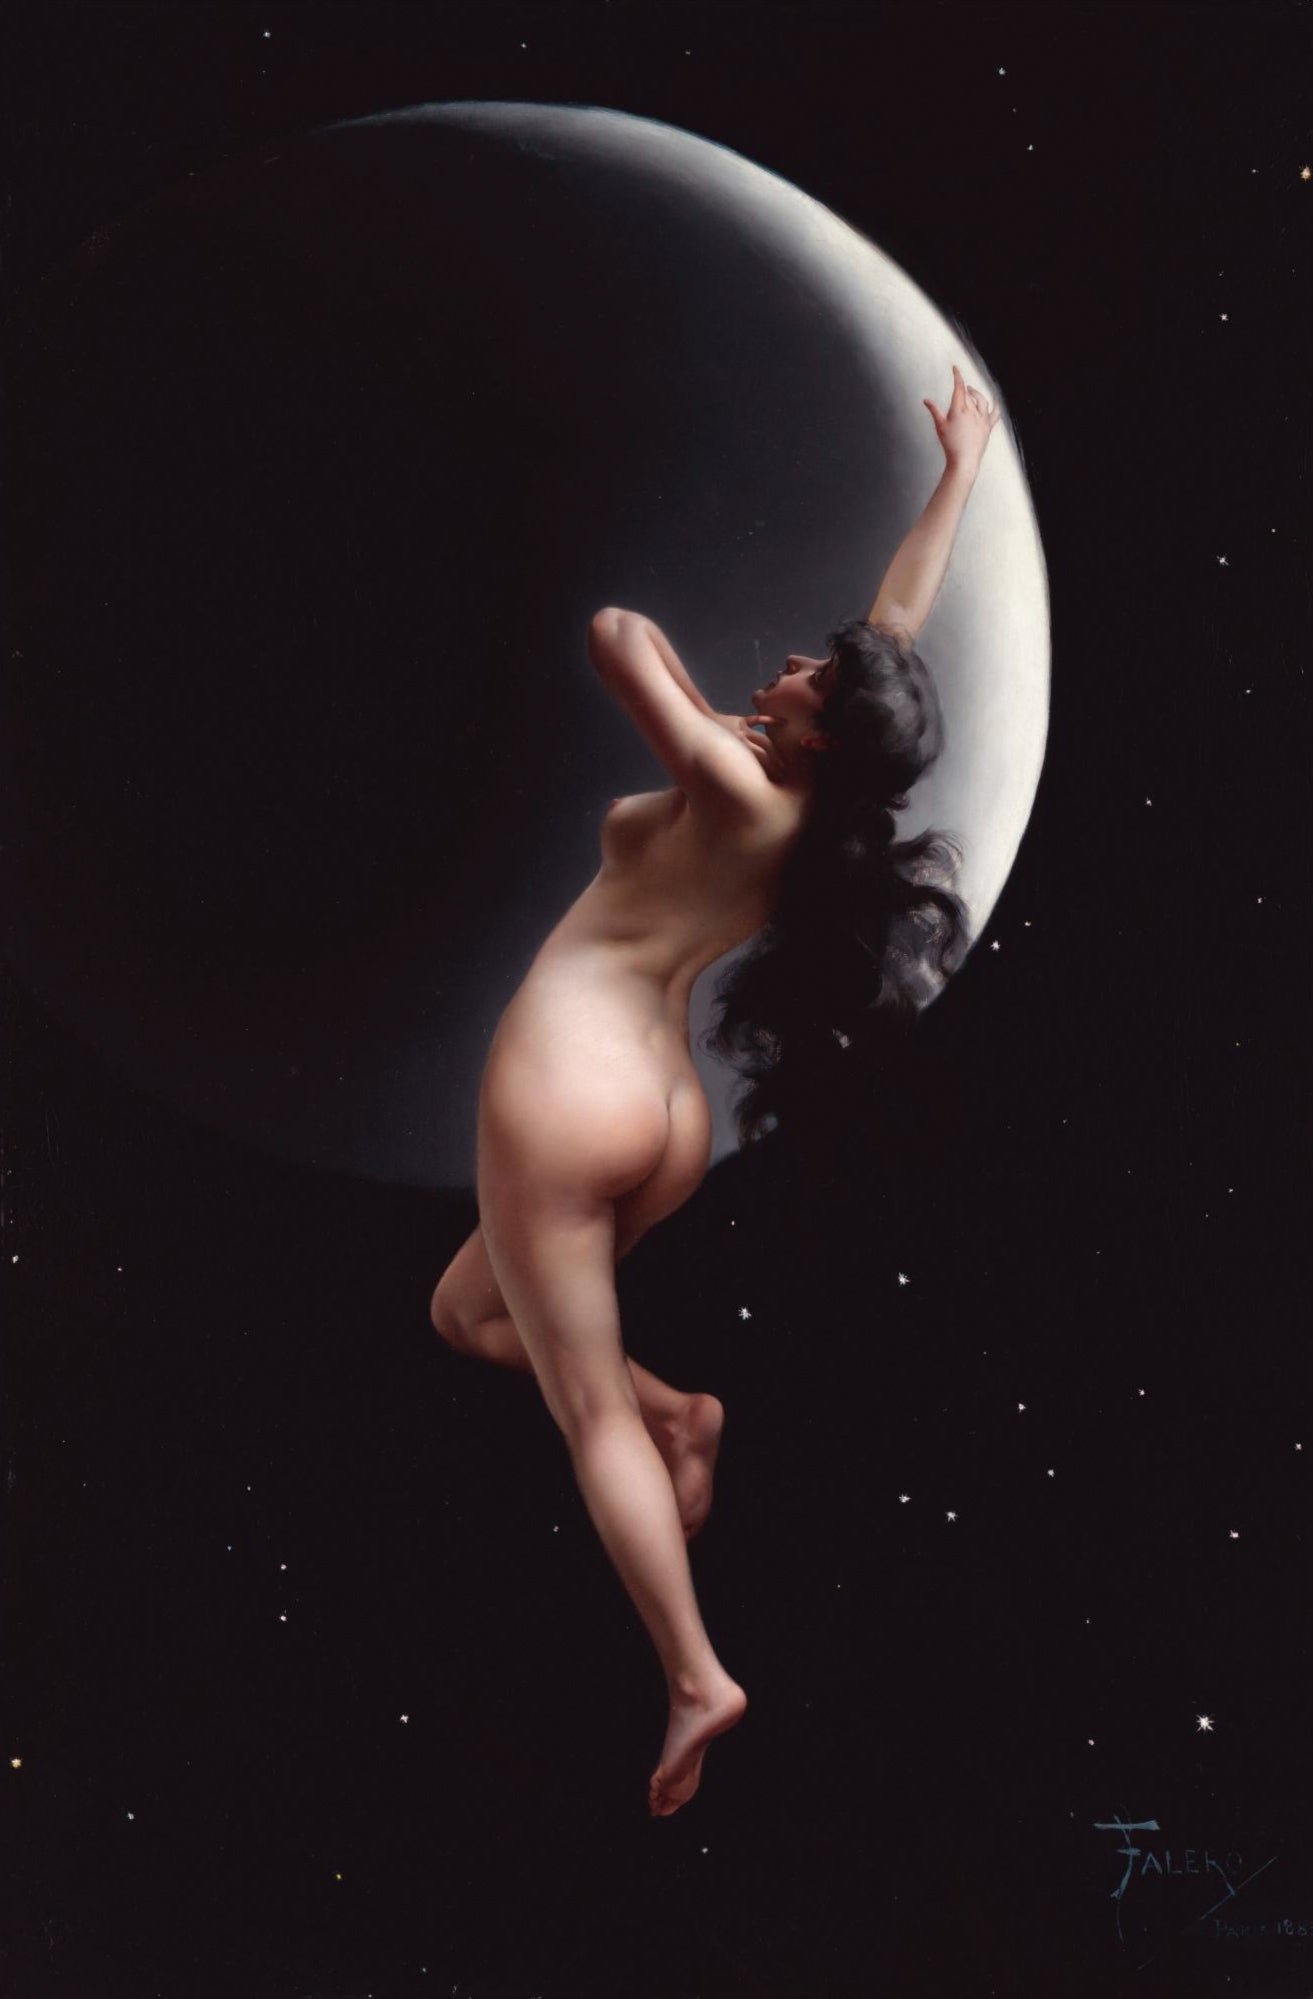 Nymphe de la lune - Luis Ricardo Falero